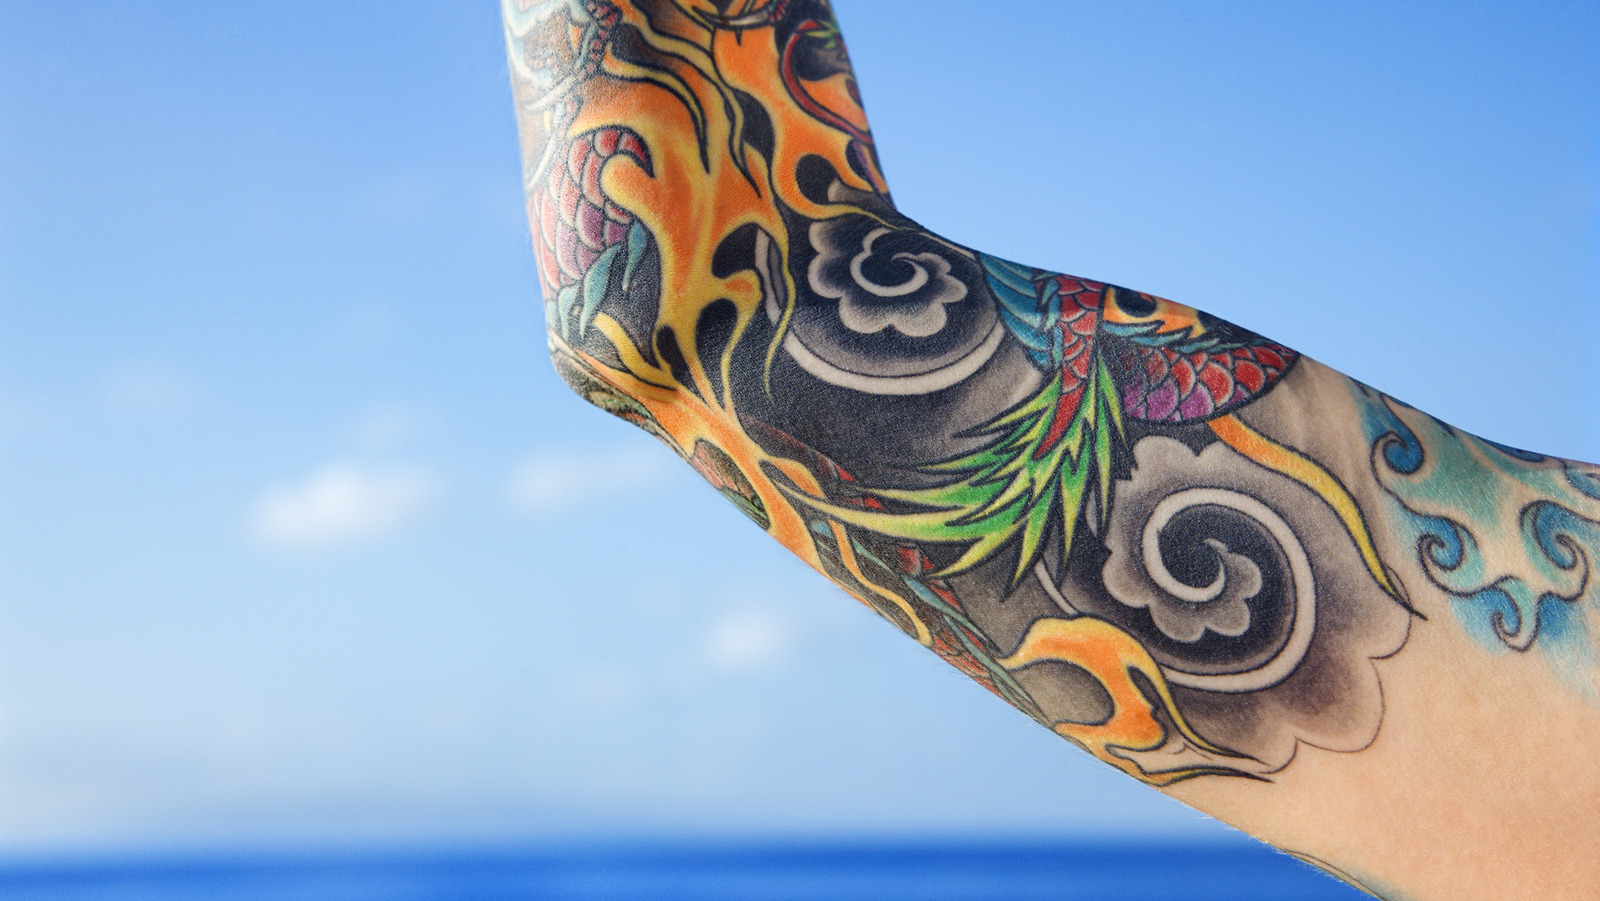 Leg Tattoos - Tattoo Insider  Calf sleeve tattoo, Leg tattoos, Japanese leg  tattoo